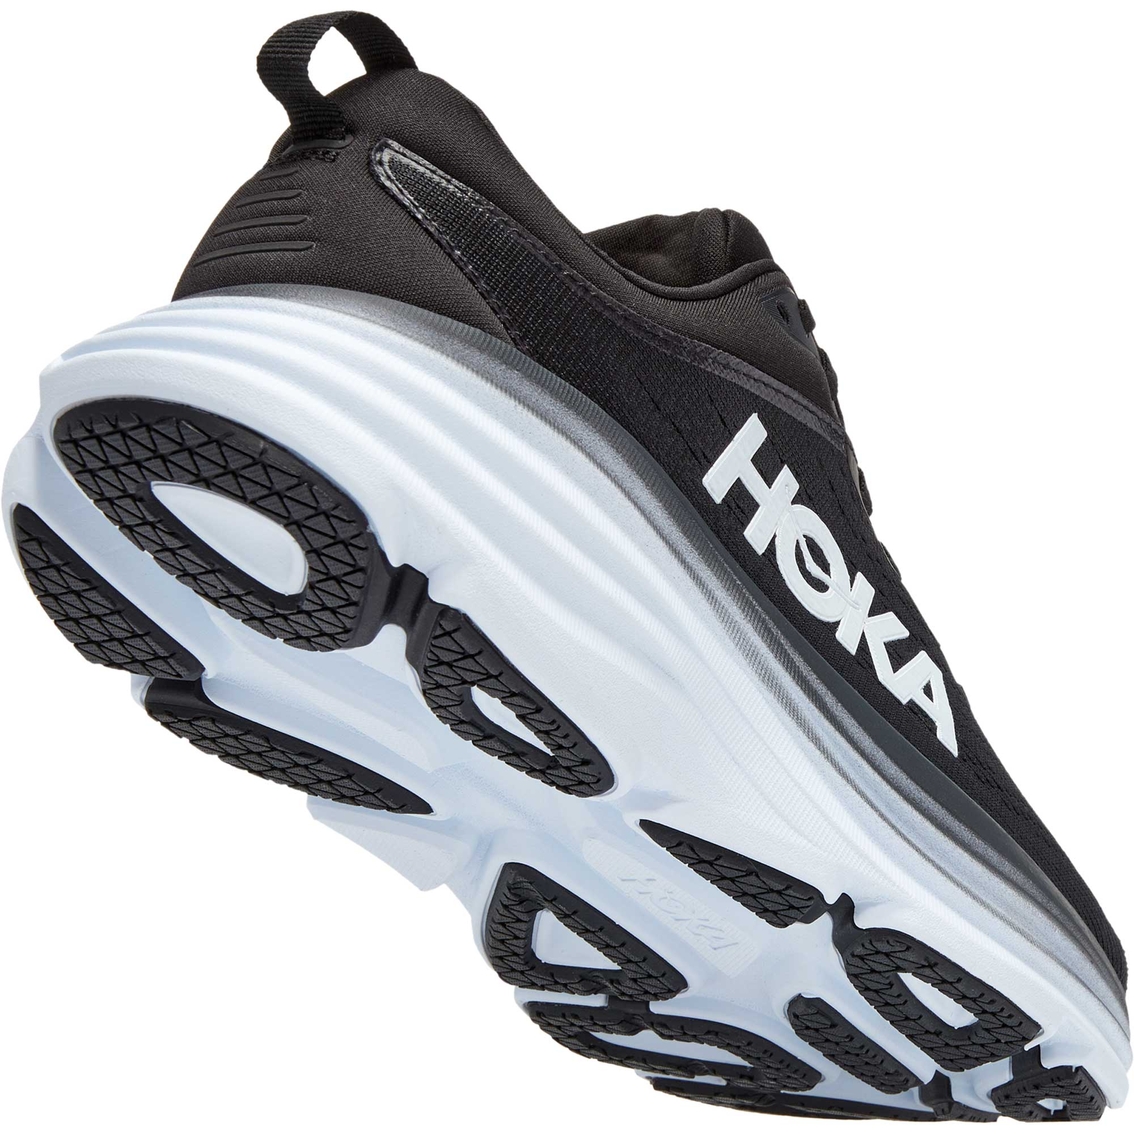 Hoka Women's Bondi 8 Running Shoes - Image 5 of 8